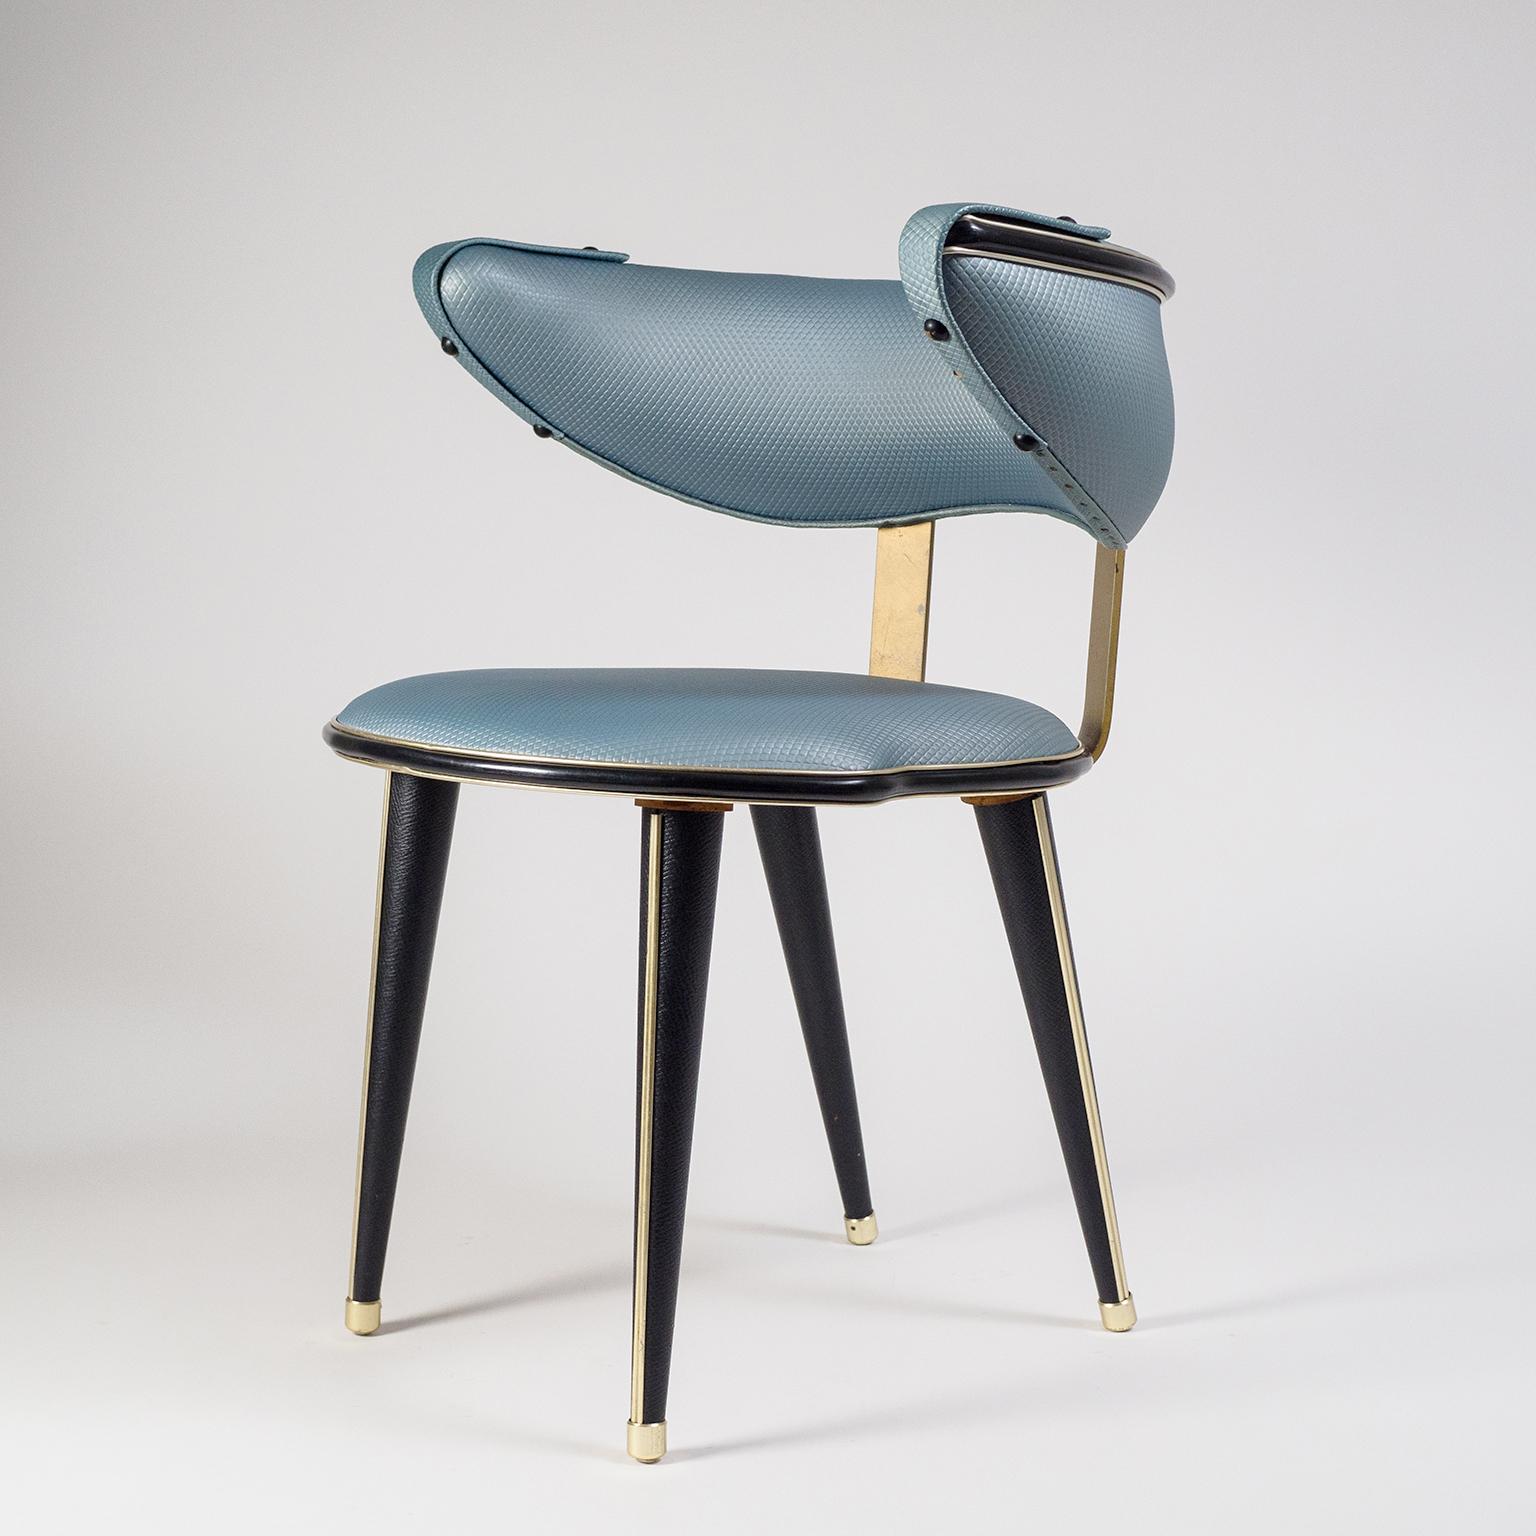 Schöner italienischer Beistell- oder Frisierstuhl von Umberto Mascagni, um 1960. Sitz und Armlehne sind mit einem seltenen stahlblauen Metallic-Kunstleder mit geometrischem Aufdruck bezogen, die Holzbeine mit schwarzem Kunstleder. Weitere Details